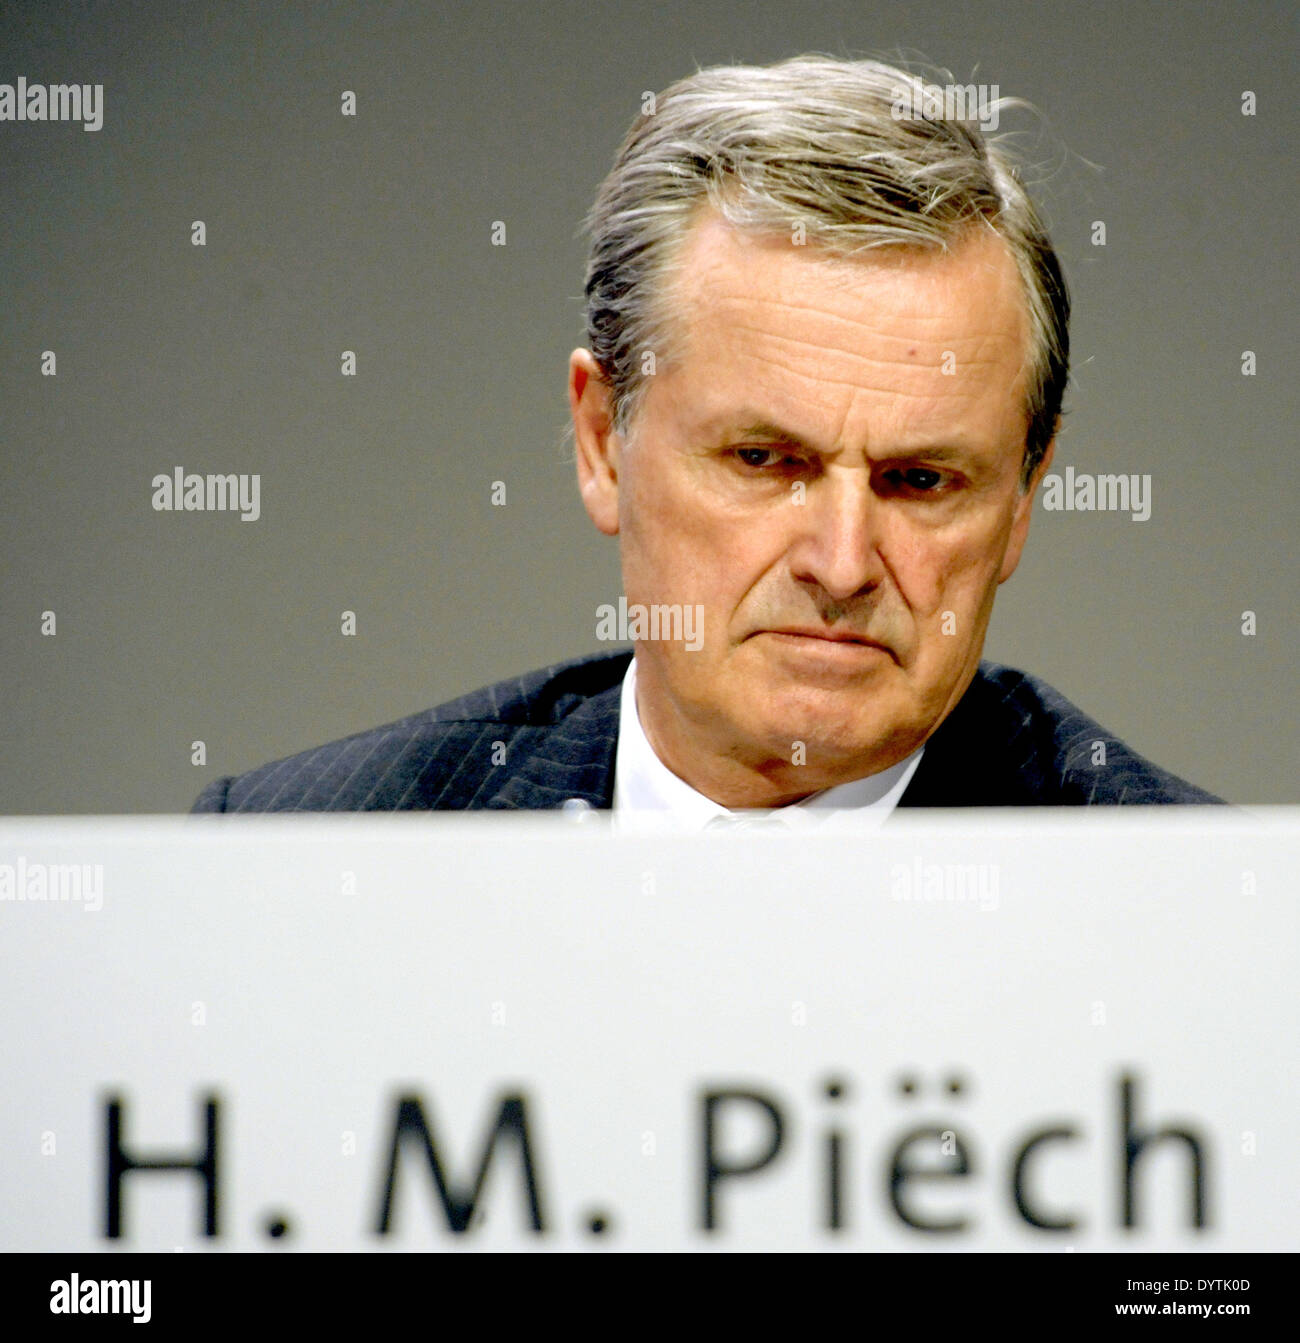 Hans Michel Piech Stock Photo - hans-michel-piech-DYTK0D